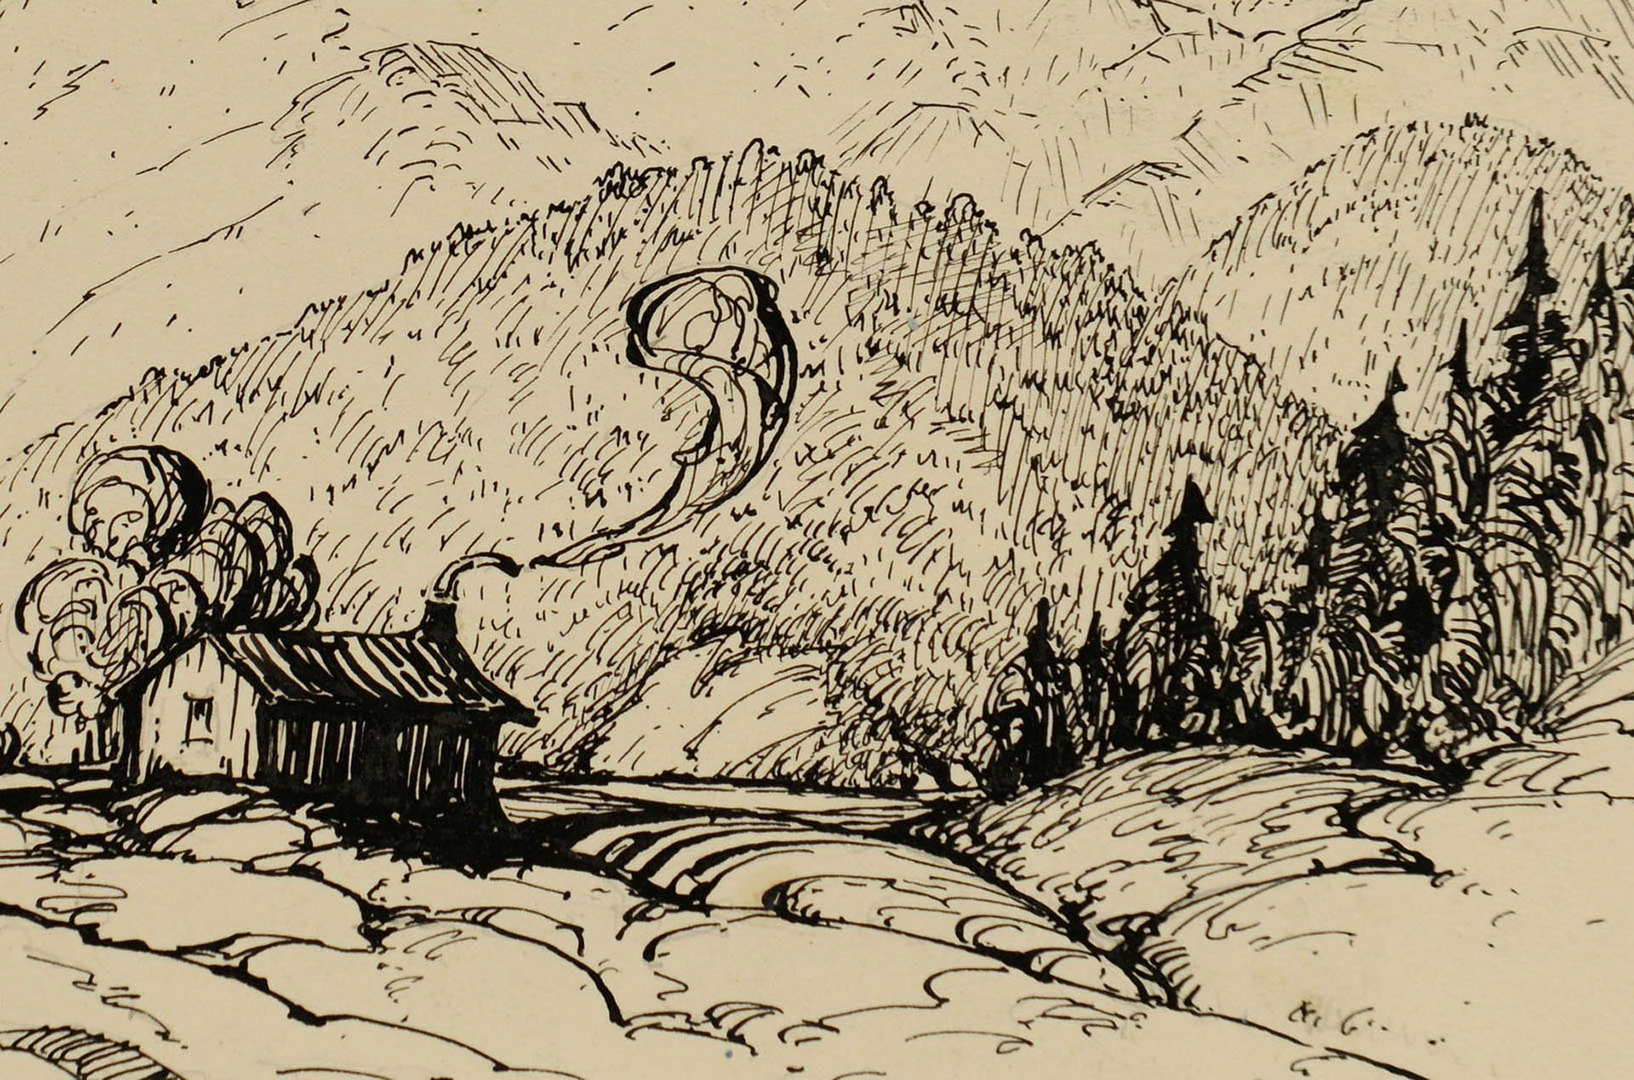 Lot 176: Two Louis Jones ink drawings of mountain scenes